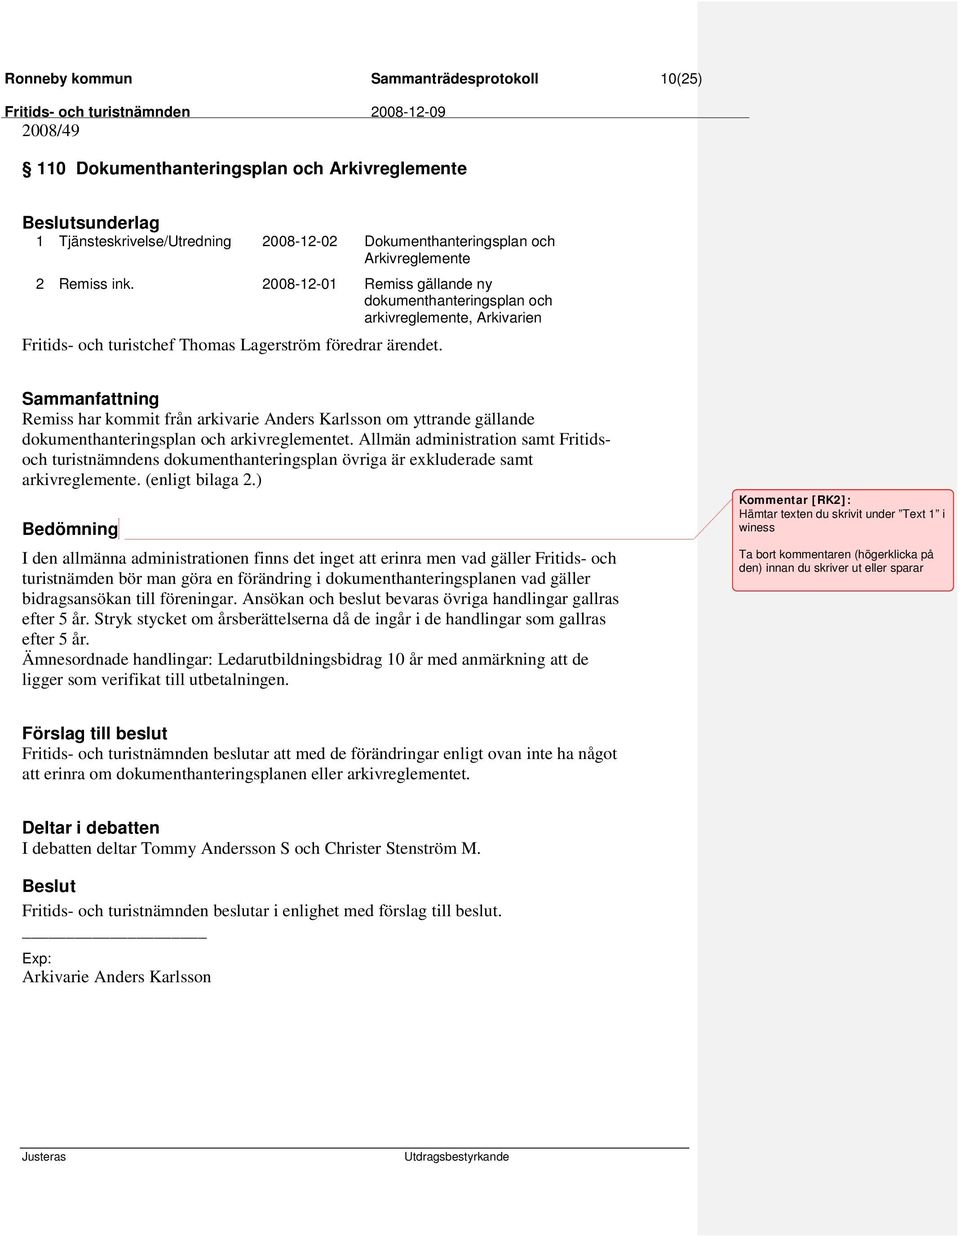 2008-12-01 Remiss gällande ny dokumenthanteringsplan och arkivreglemente, Arkivarien Remiss har kommit från arkivarie Anders Karlsson om yttrande gällande dokumenthanteringsplan och arkivreglementet.